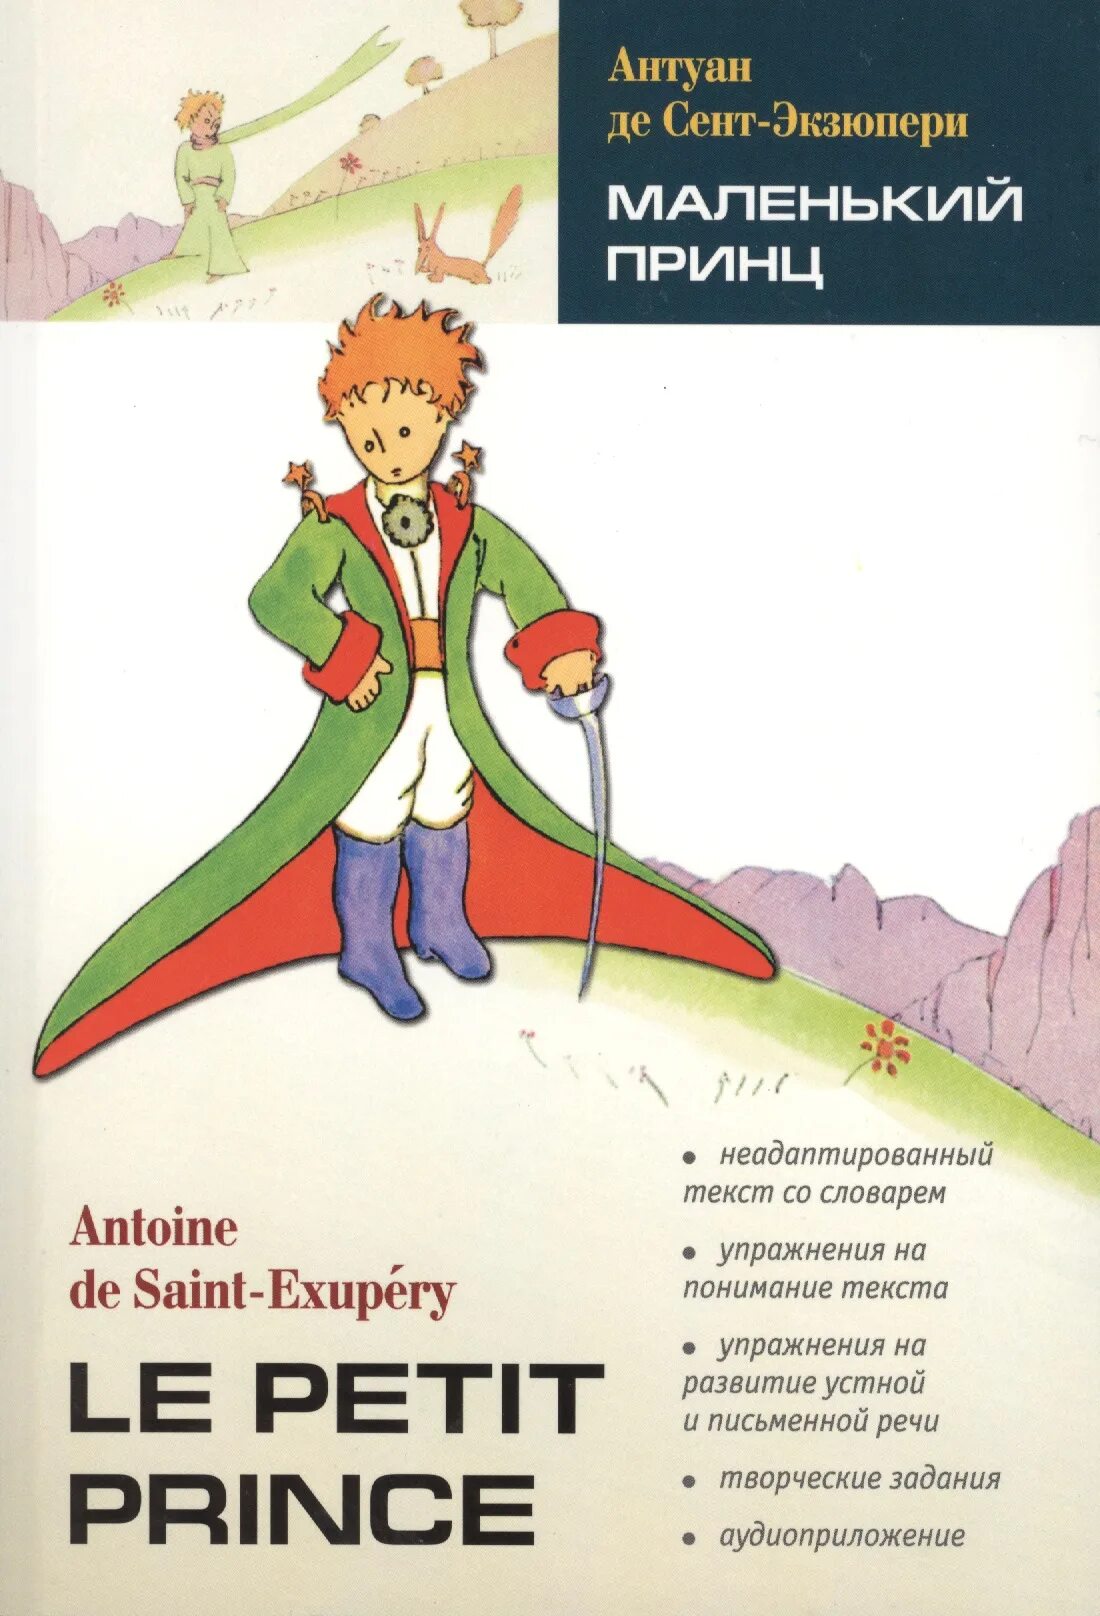 Маленький принц какой год. Французский язык с маленьким принцем книга. Антуан Экзюпери маленький принц. Маленький принц Антуан де сент-Экзюпери на французском языке. Сент-Экзюпери де а. «маленький принц» (1942).